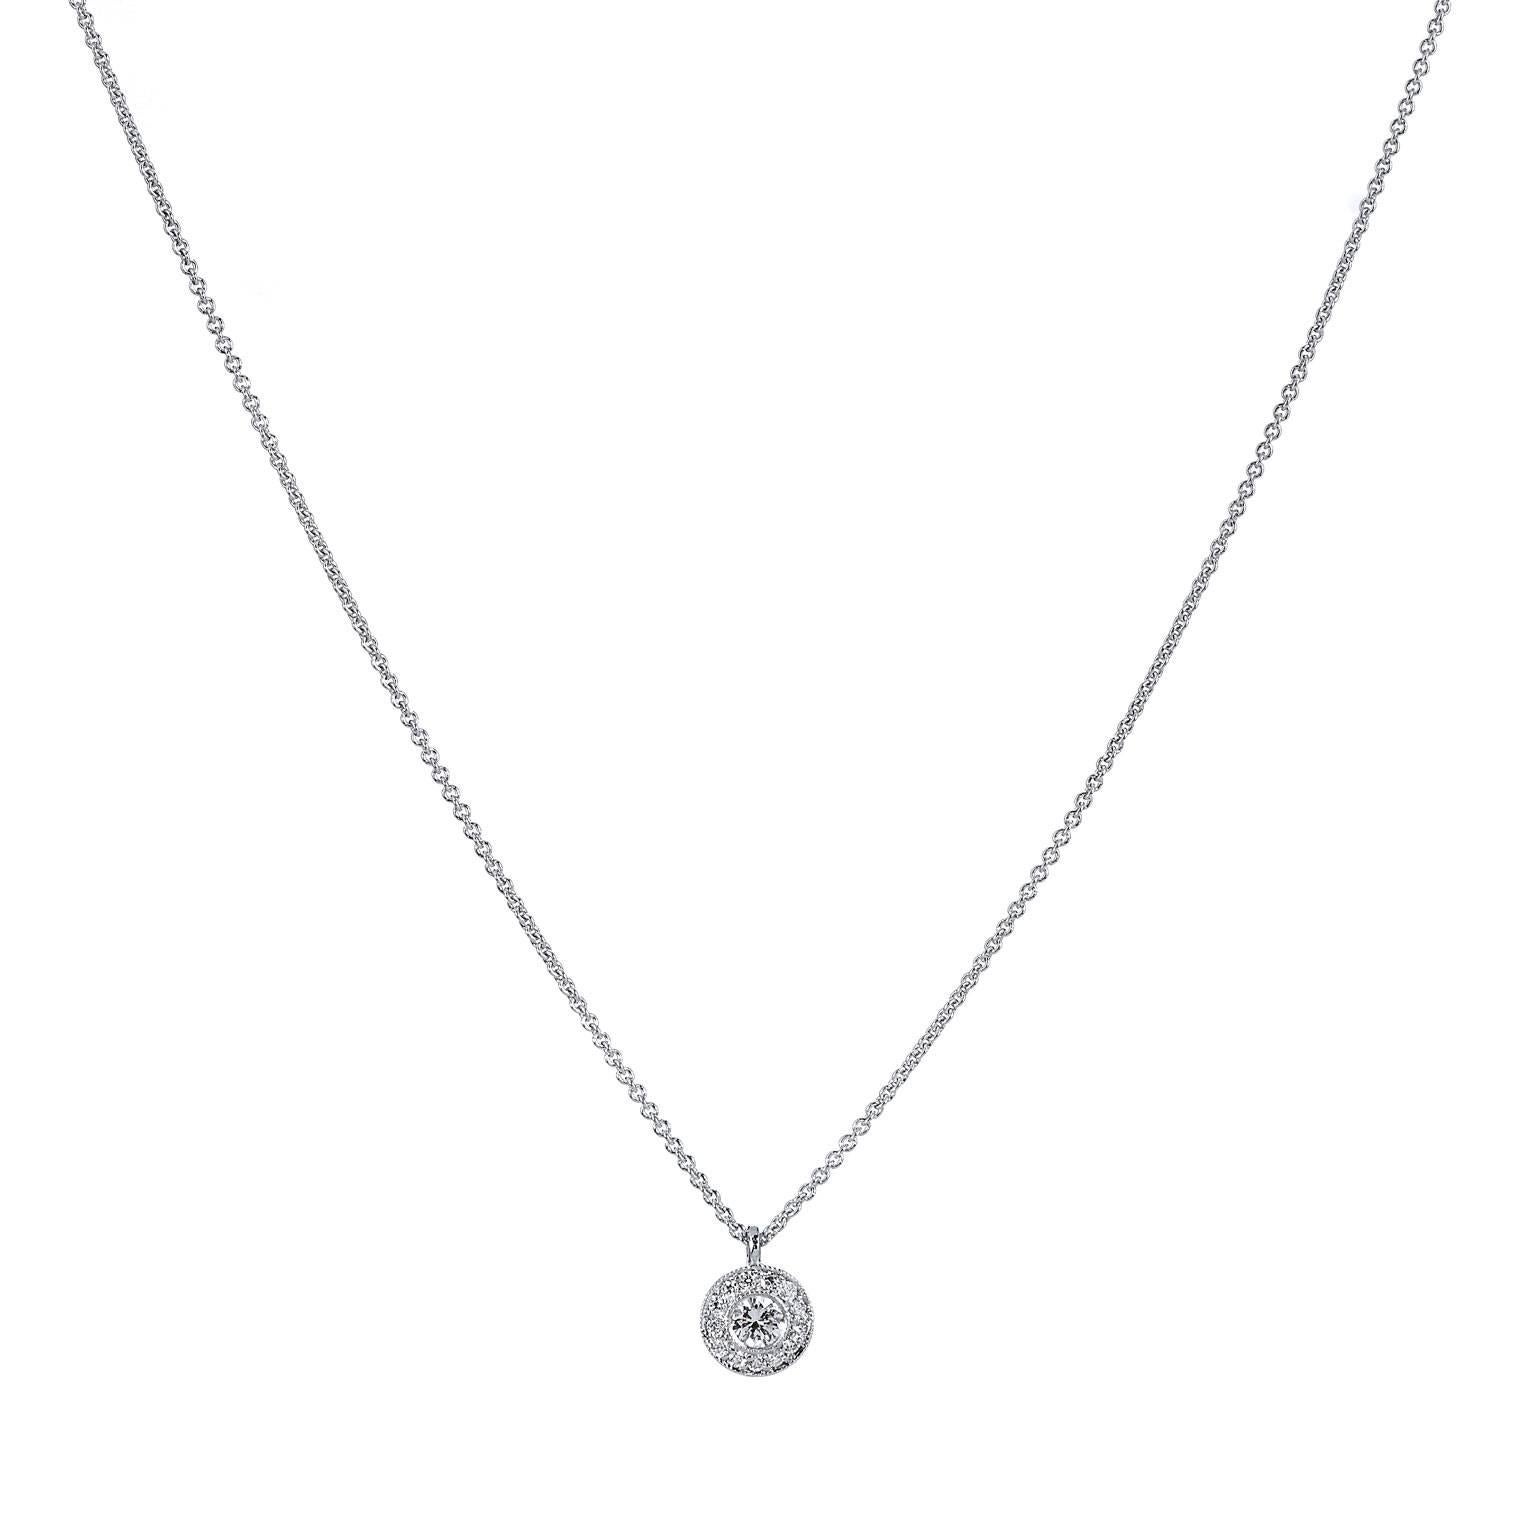 H & H 0.14 Carat Diamond Pendant Necklace